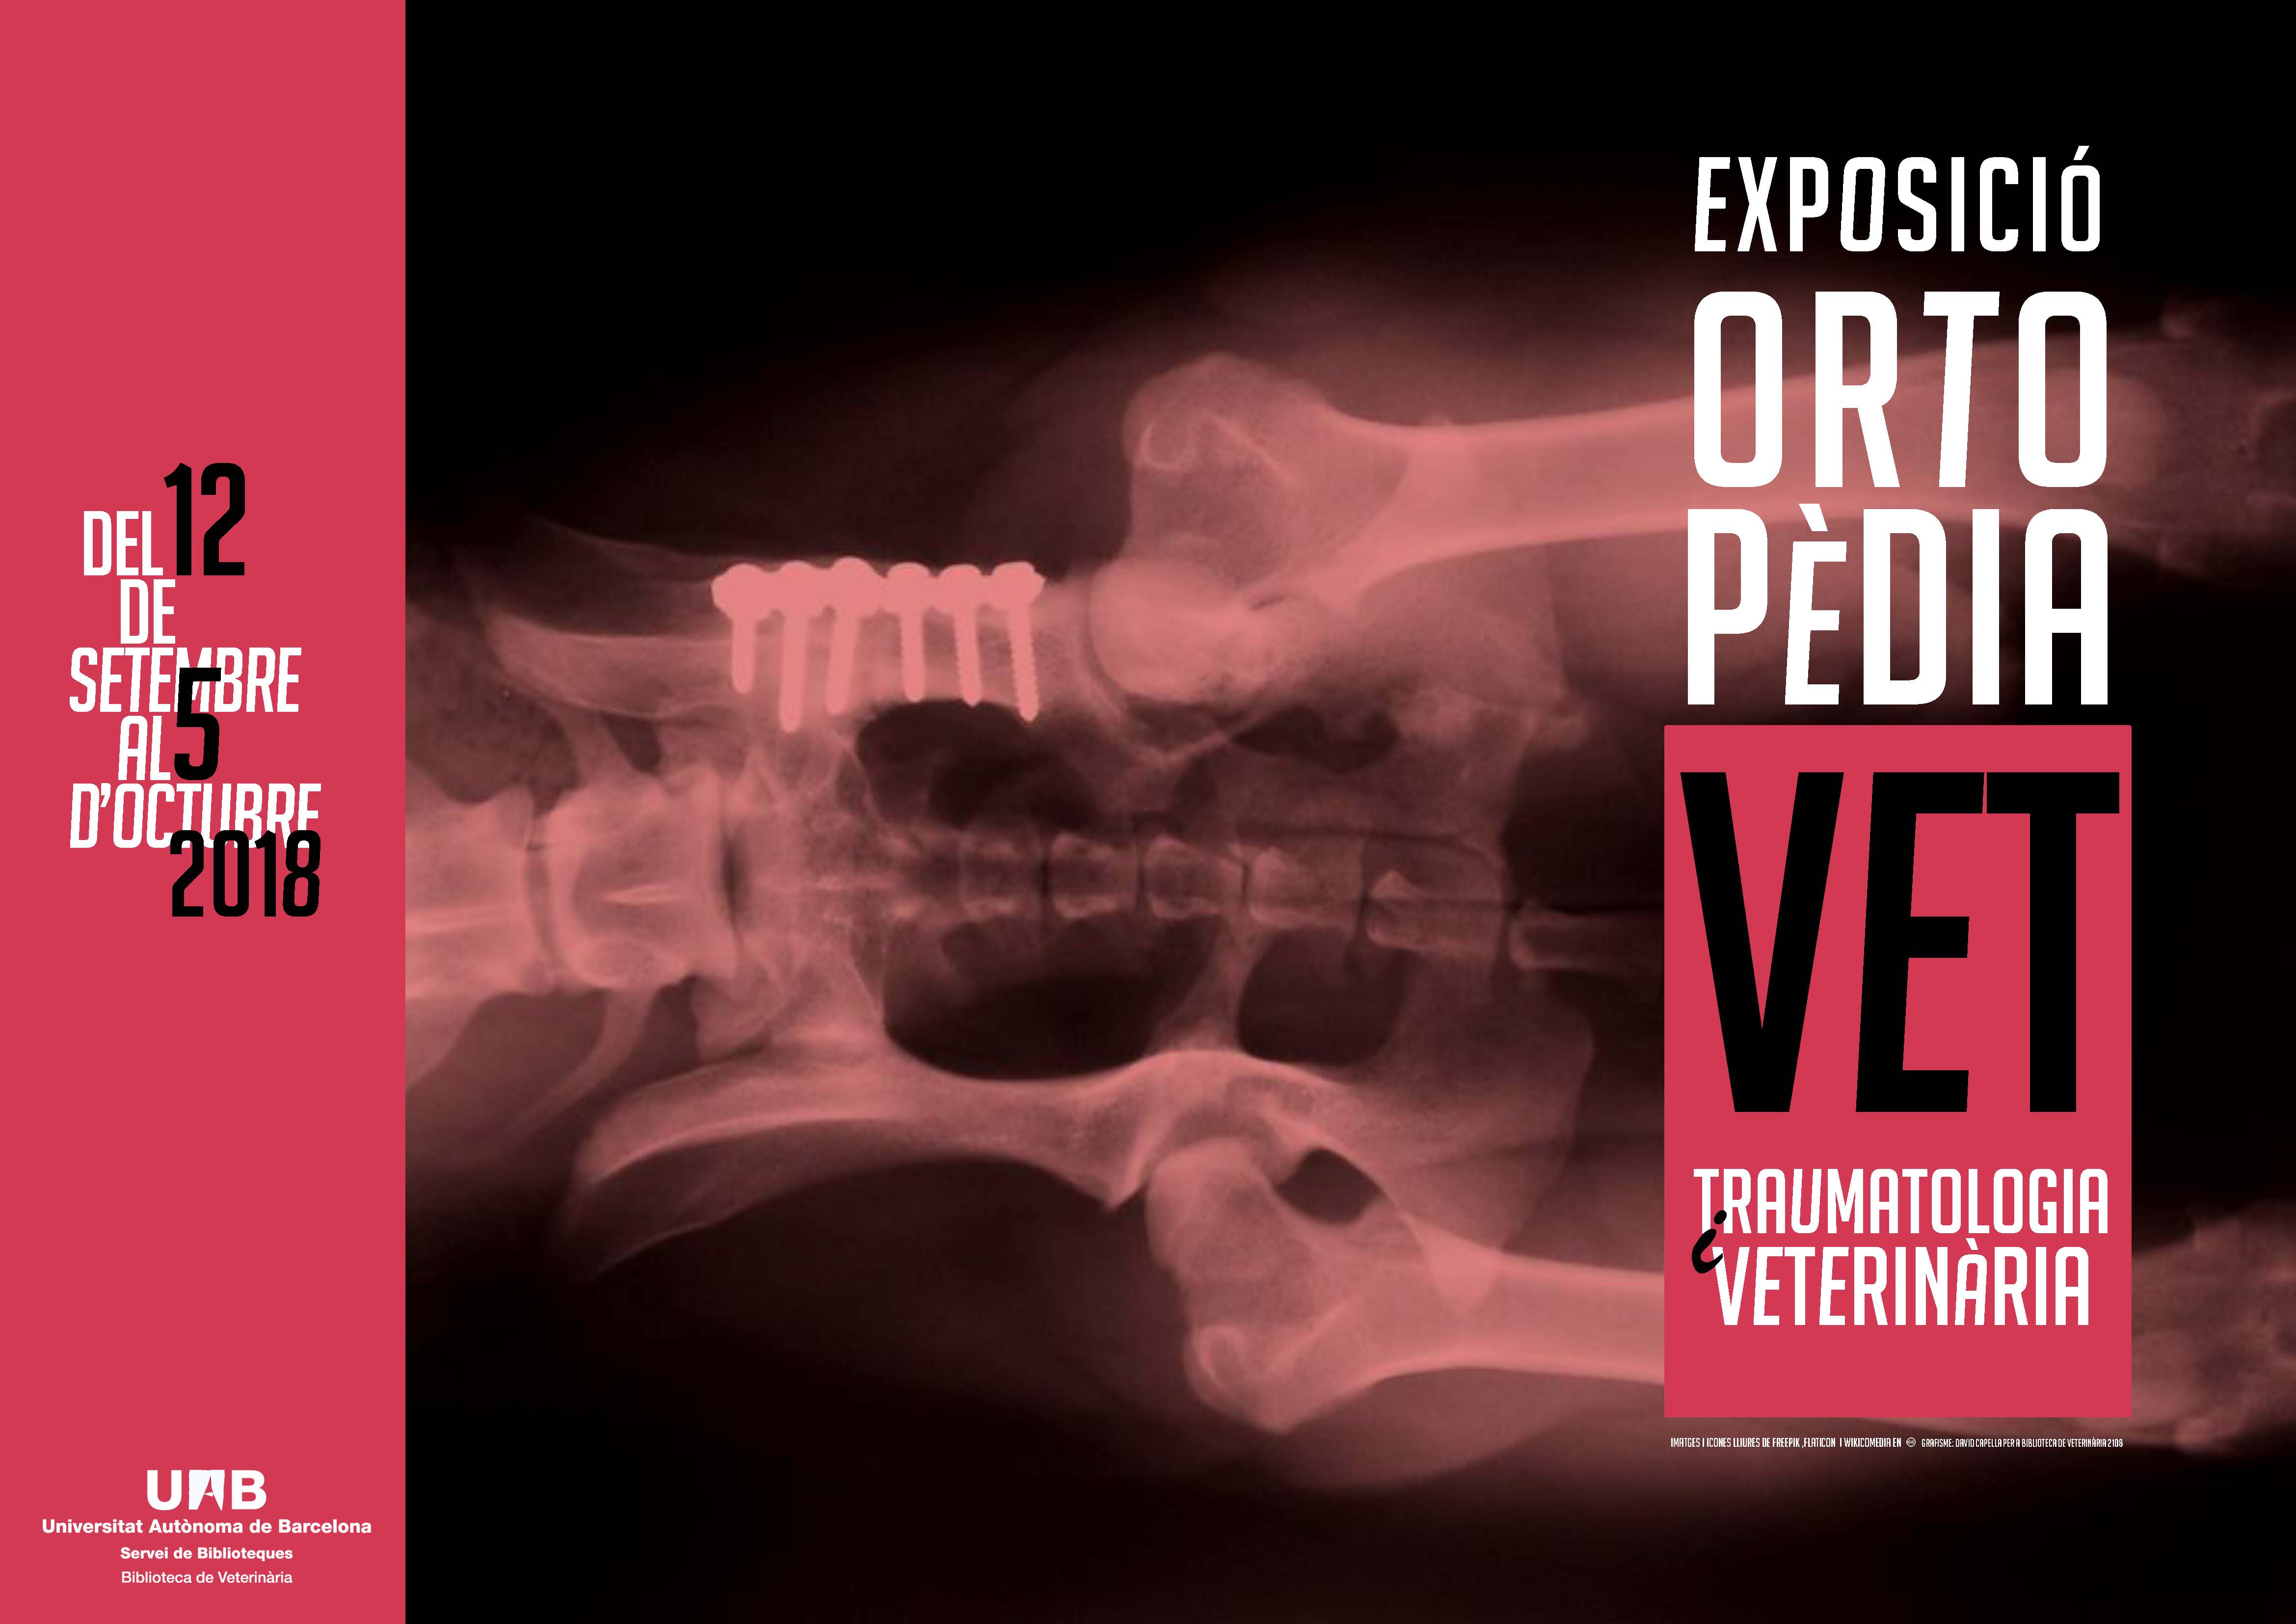 Exposició Ortopèdia i traumatologia veterinària 2018